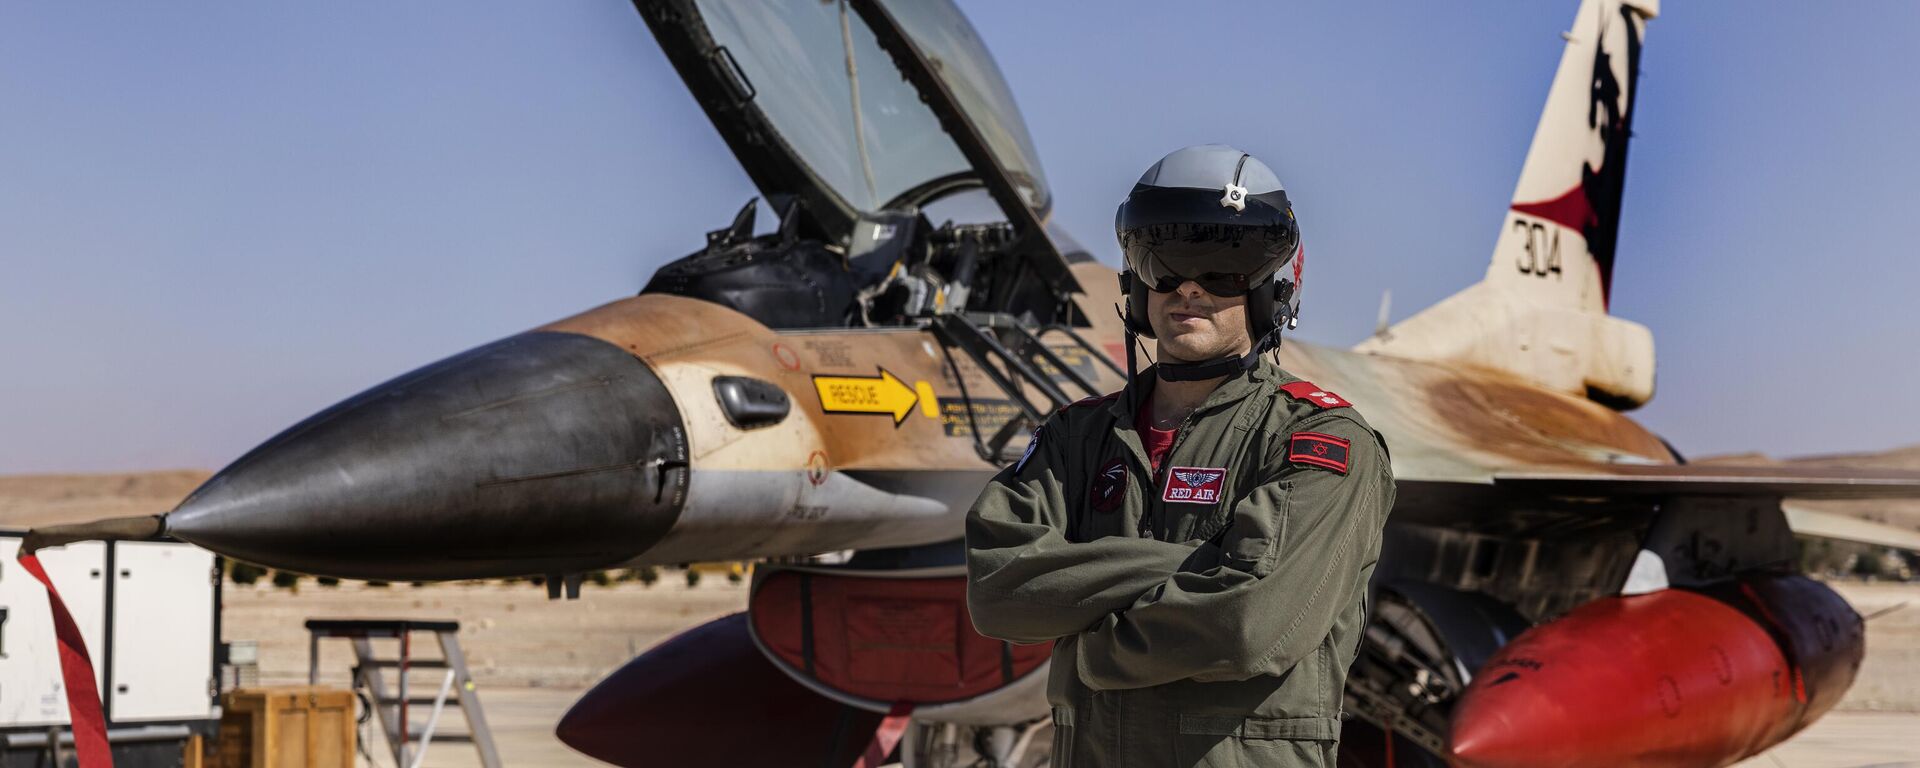 یک خلبان اف-16 اسرائیلی در حین تمرین چند ملیتی عکس می گیرد 